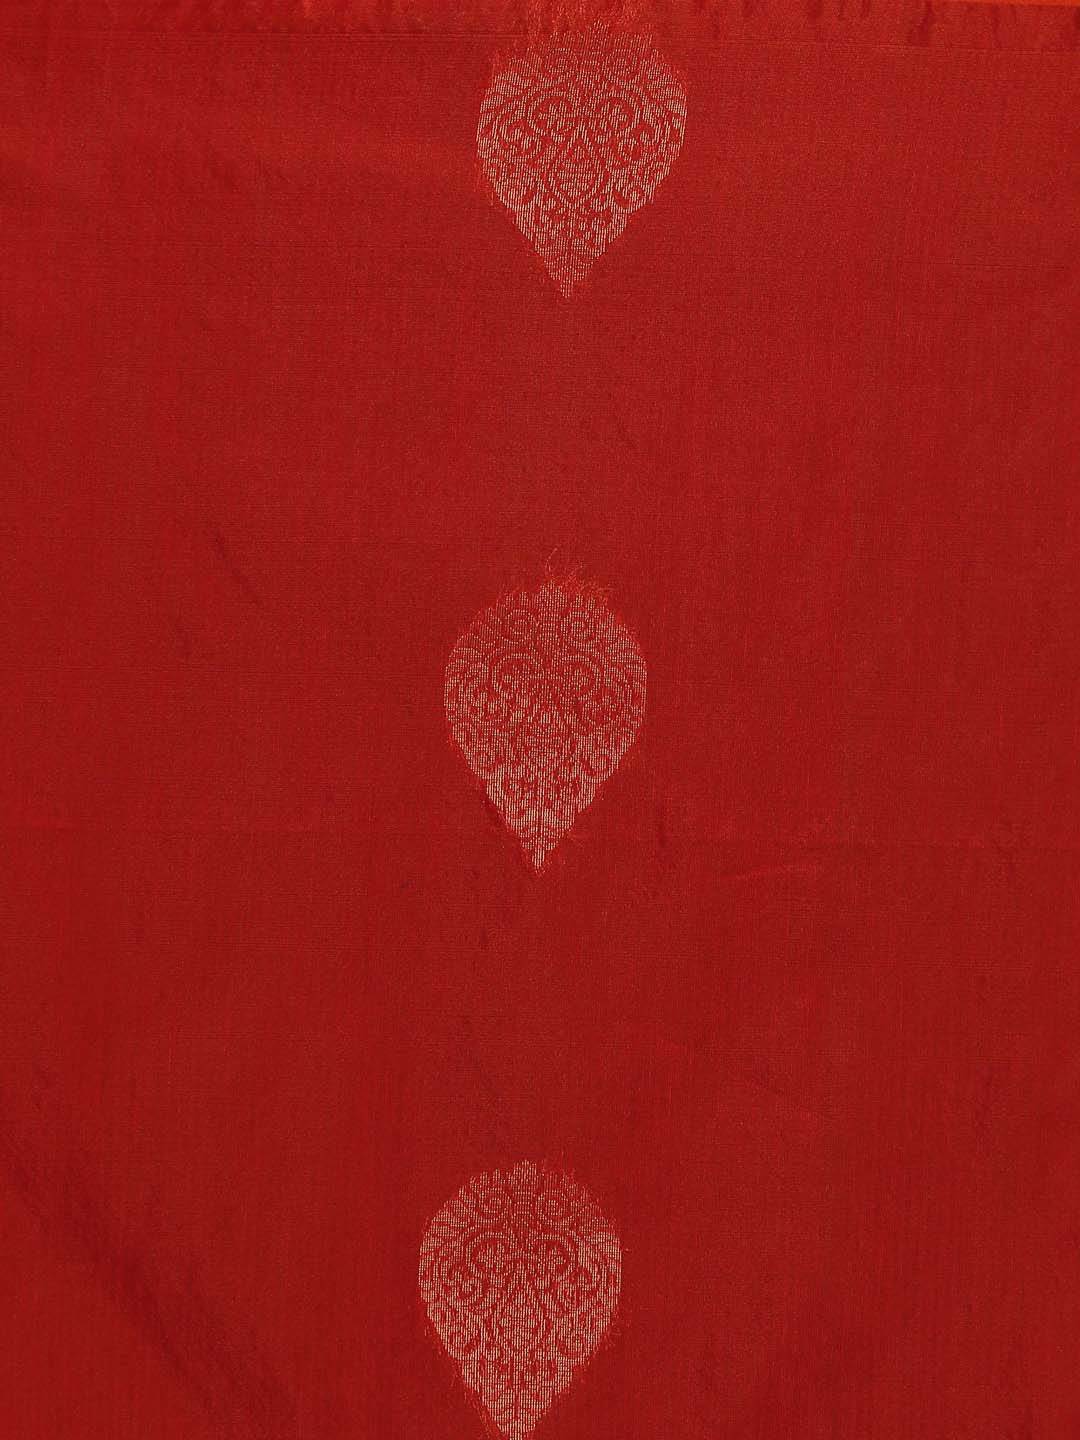 Indethnic Red Pochampally Kora Silk by Cotton Saree - Saree Detail View